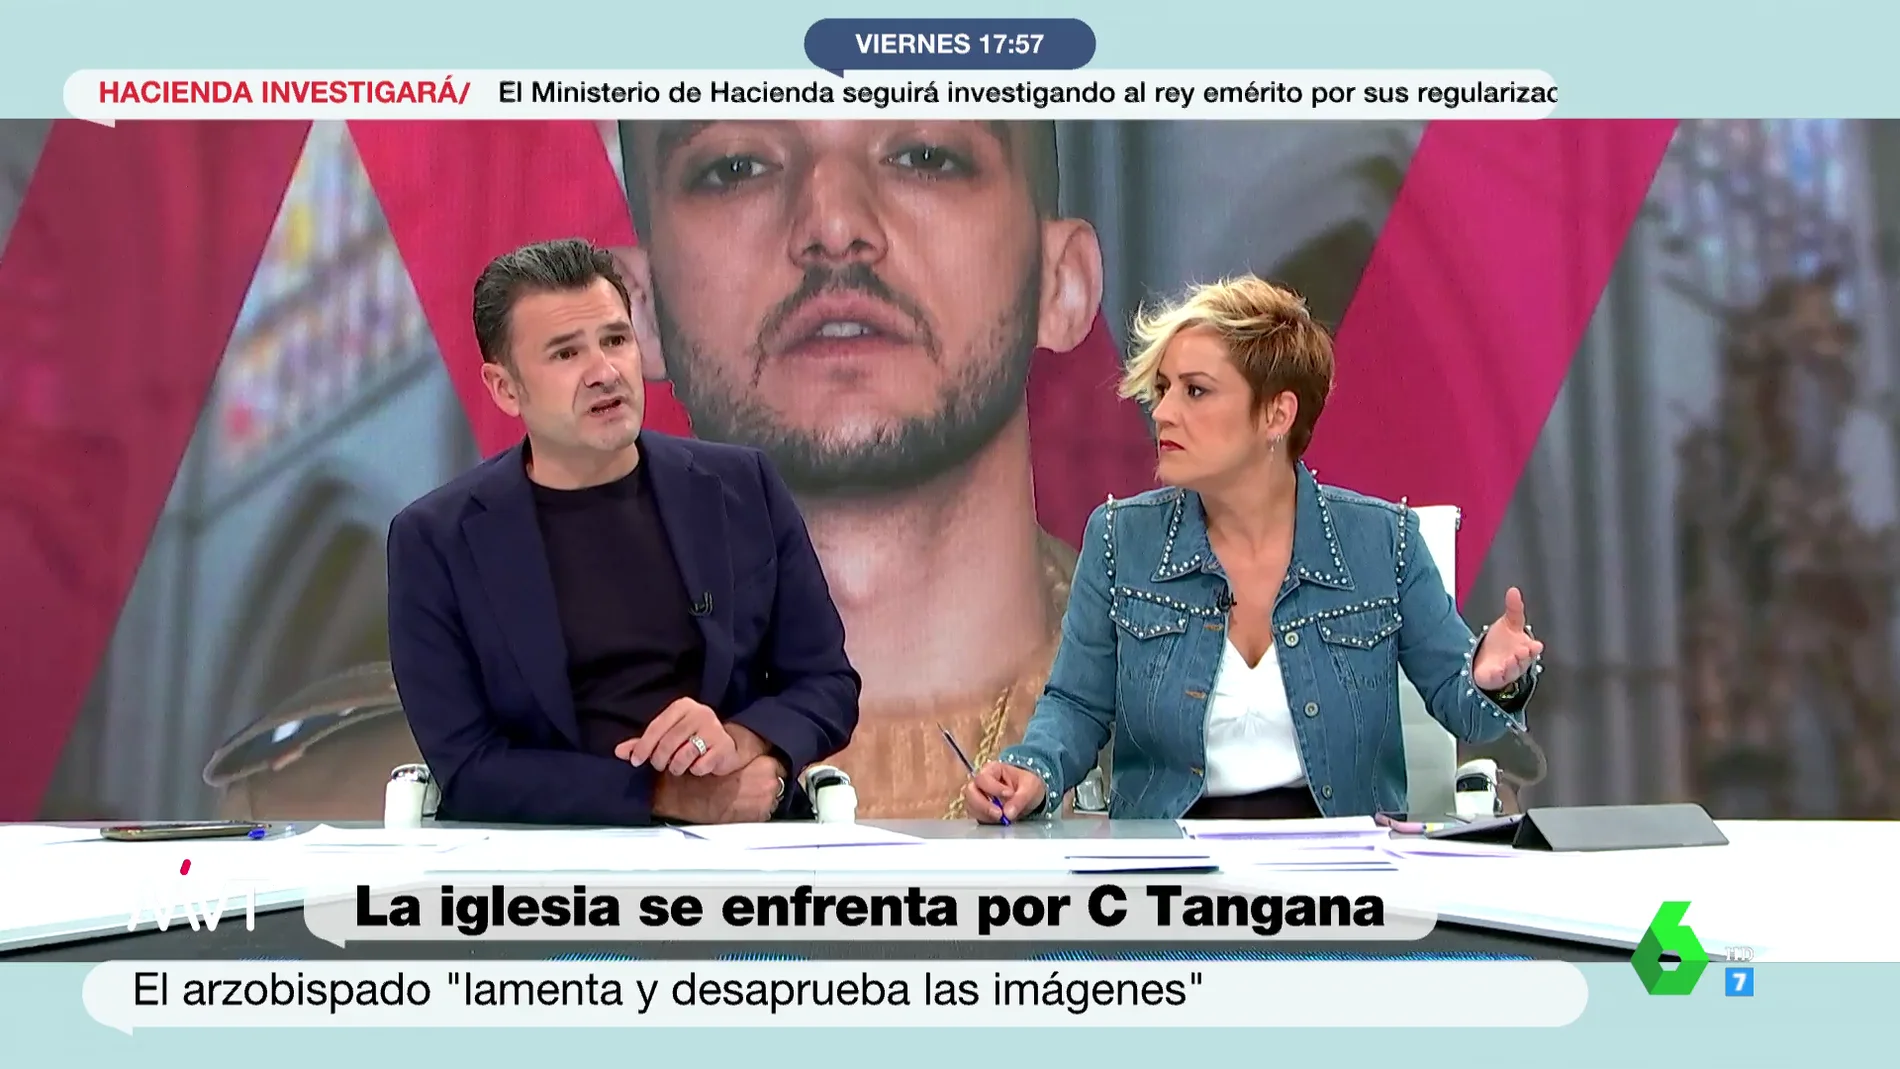 La respuesta de Iñaki López a la reacción de la Iglesia por el vídeo de C. Tangana y Nathy Peluso: "Me gustaría una condena tan tajante con los casos de abuso"